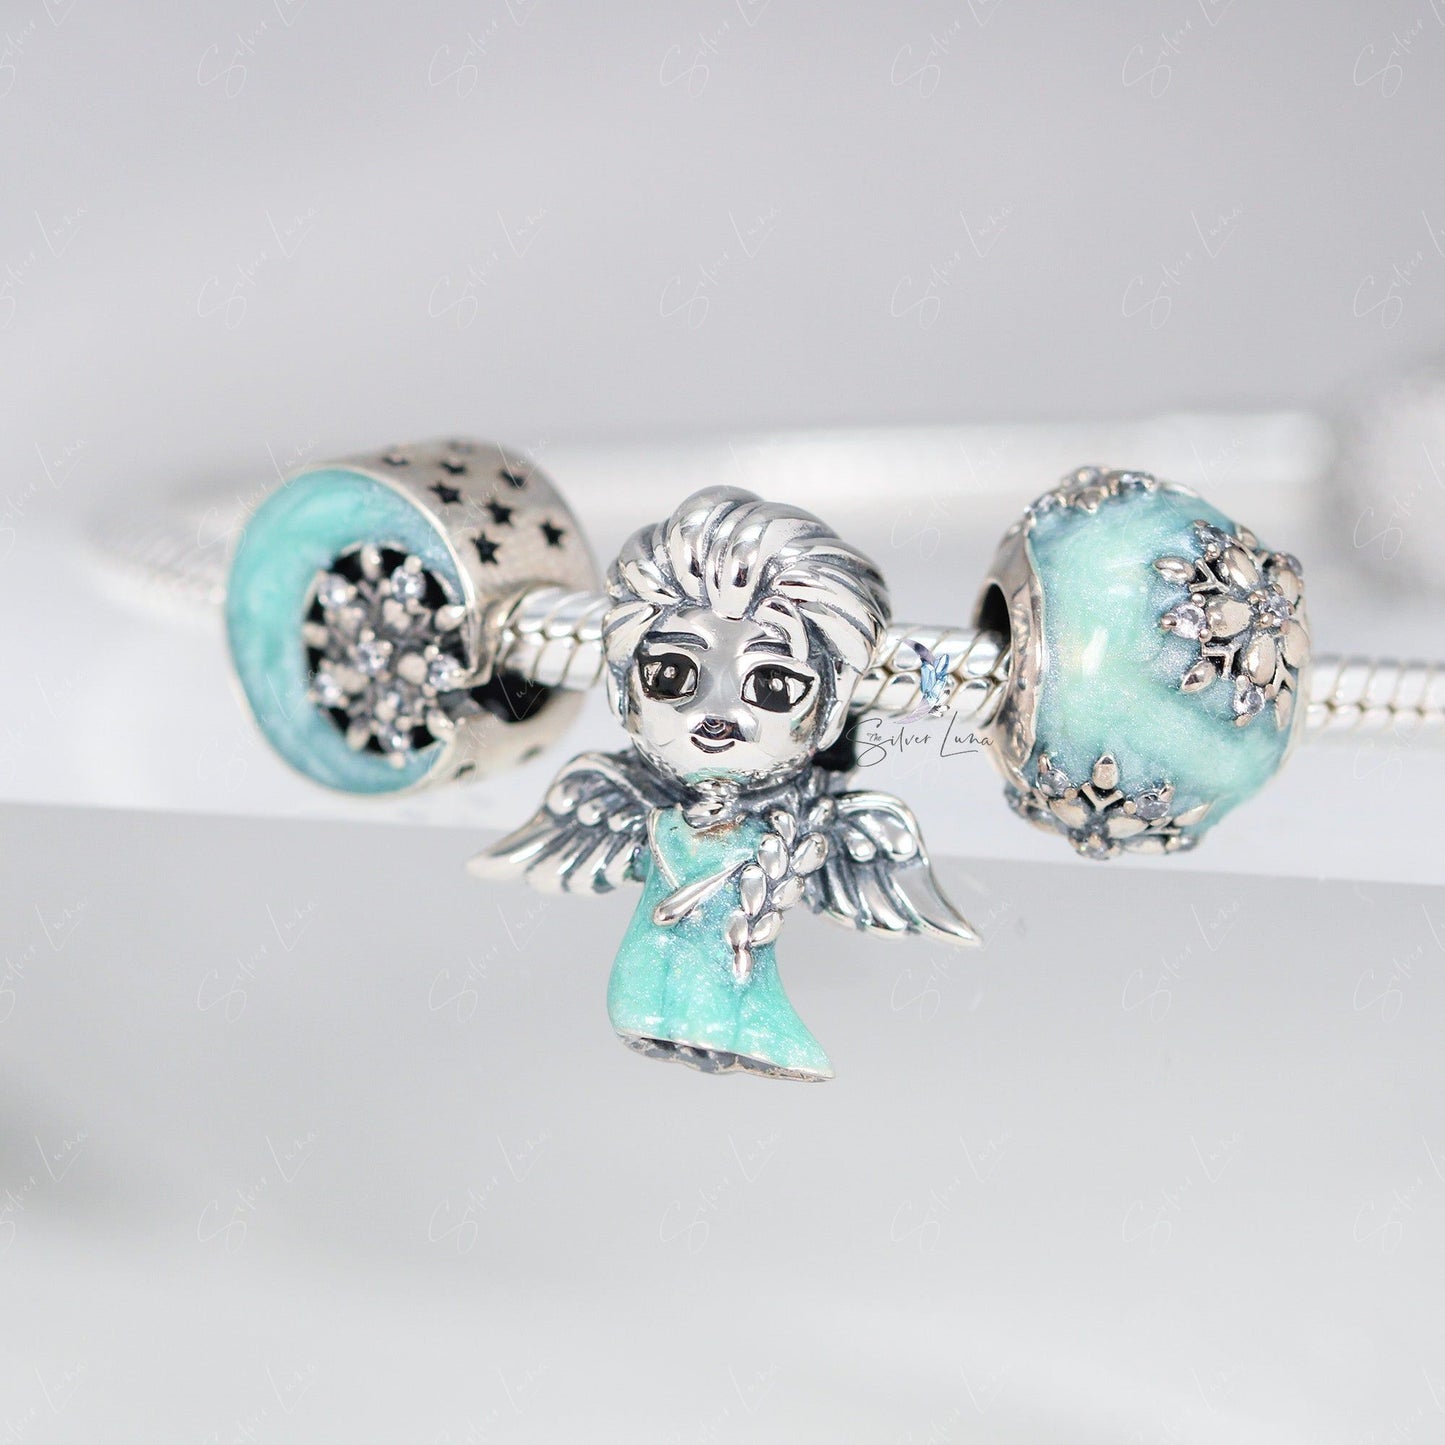 snow fairy charm bead for bracelet